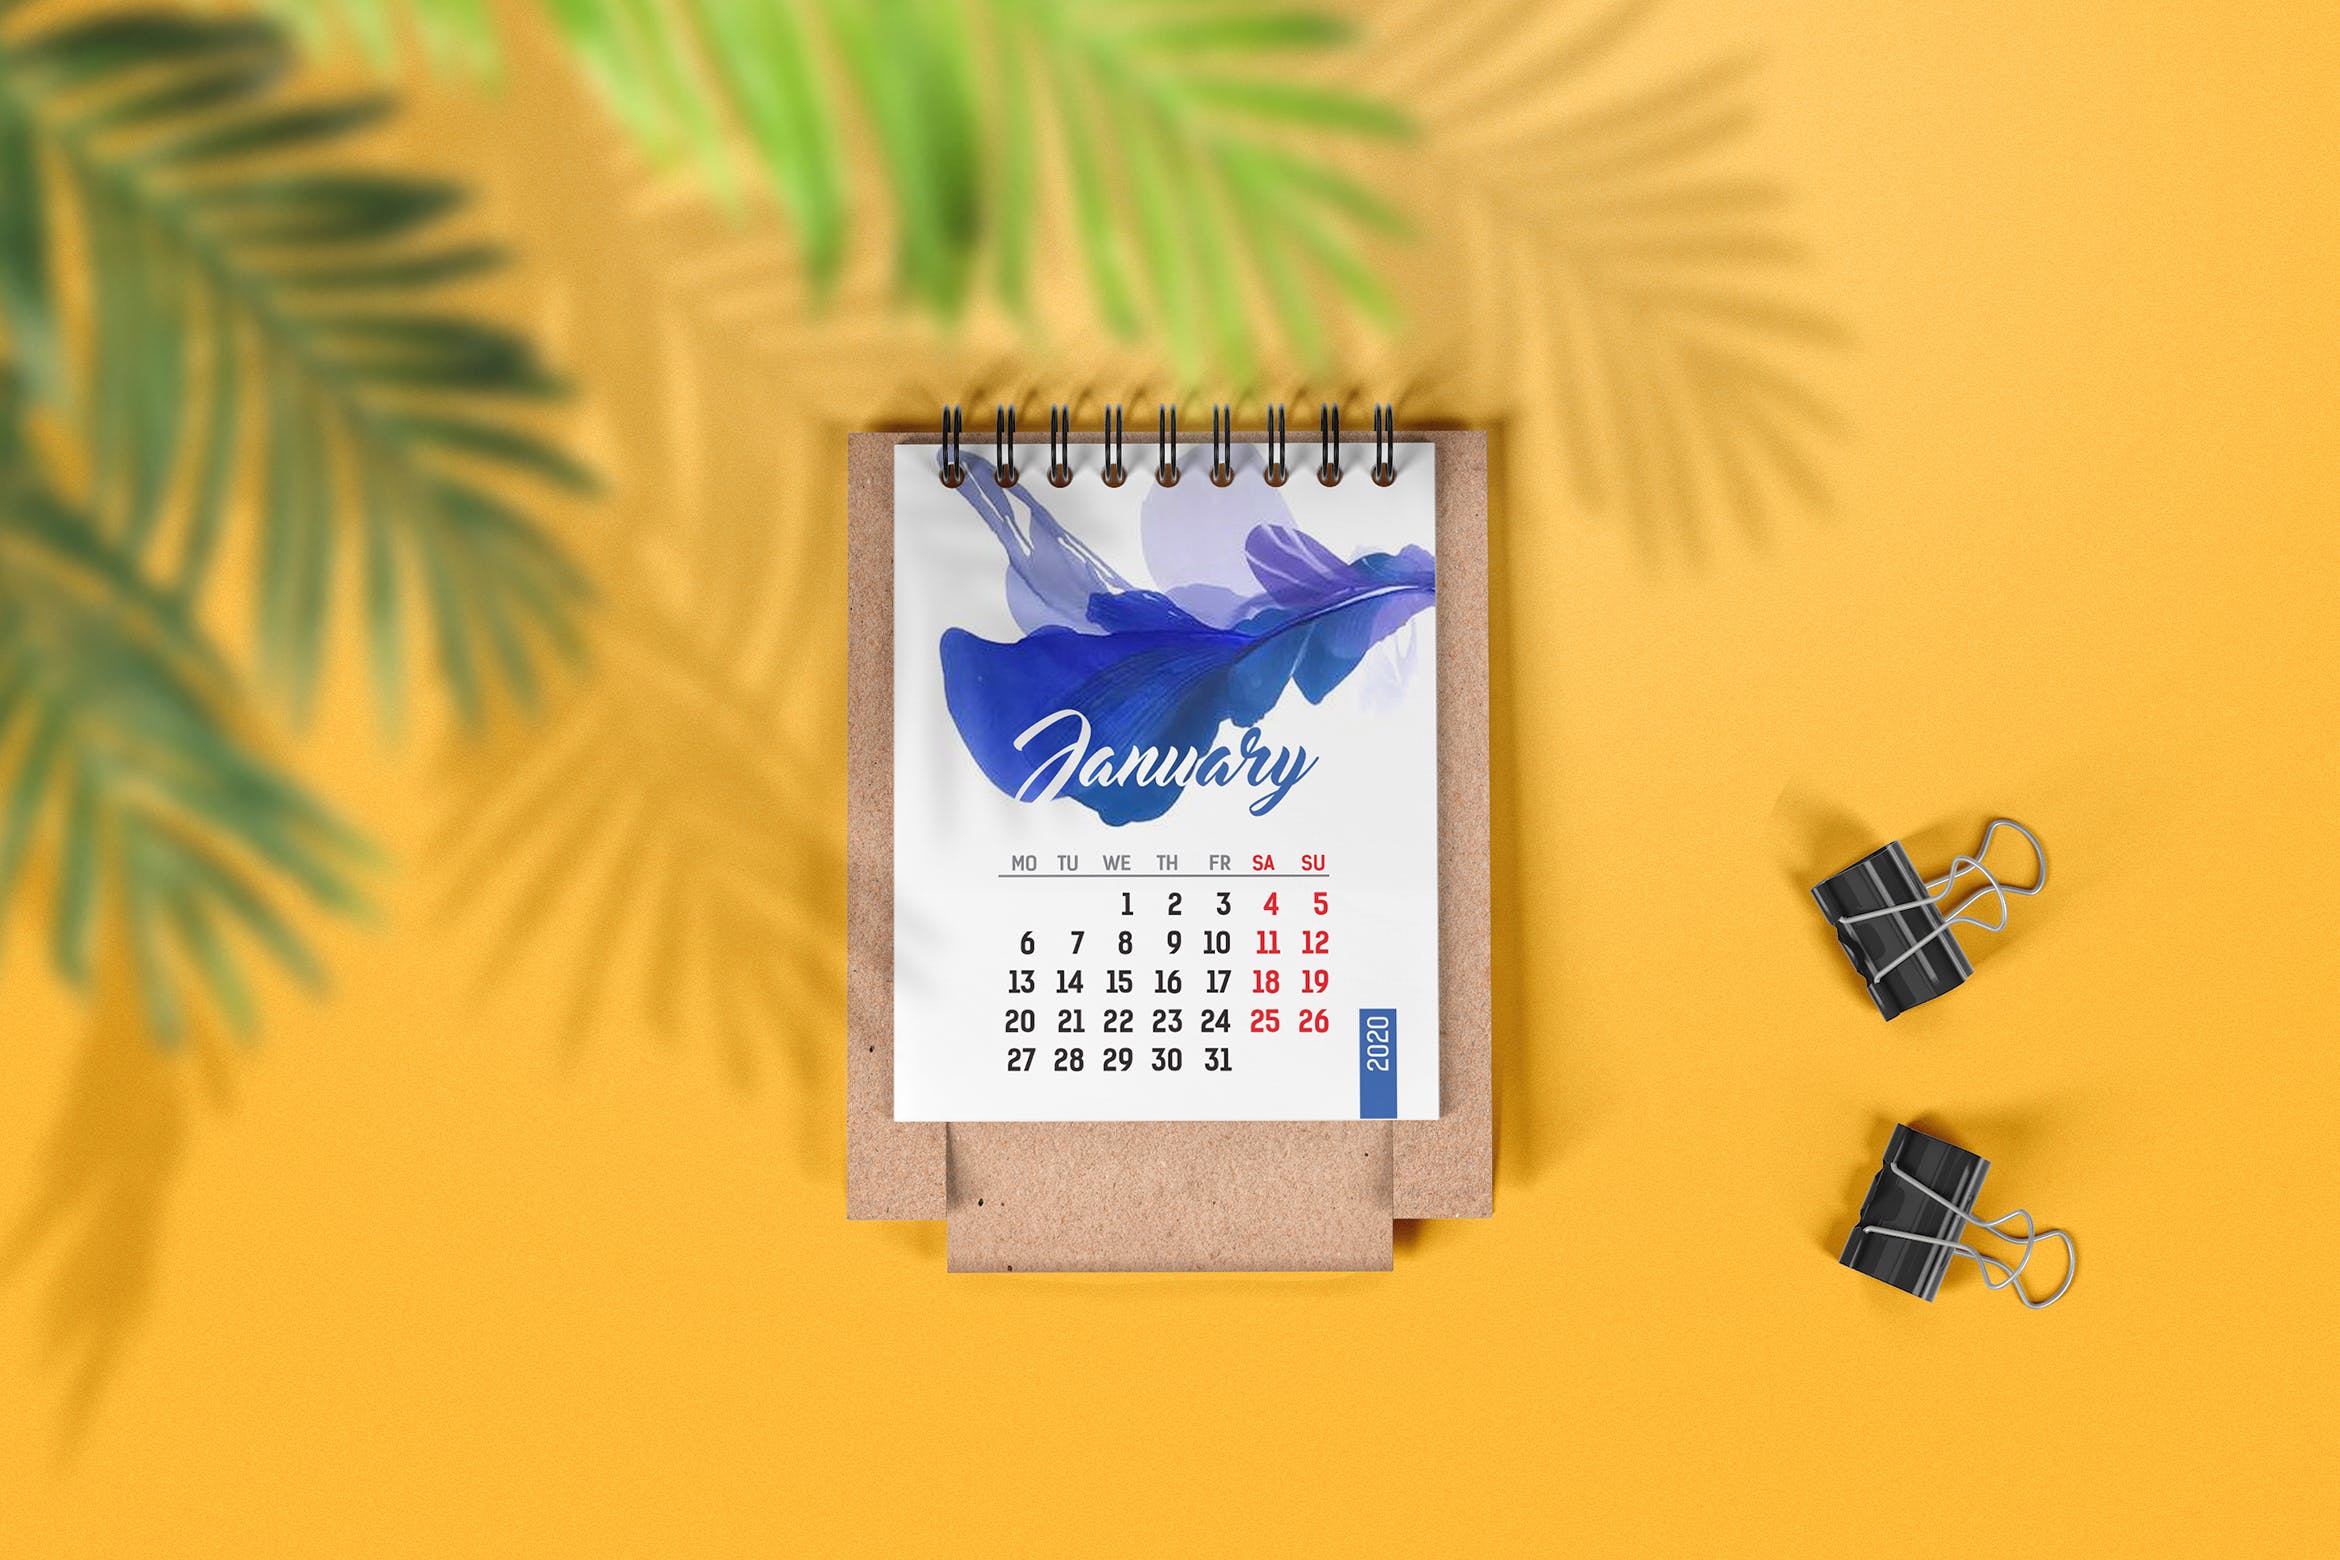 迷你桌面日历设计图样机第一素材精选 Mini Desk Calendar Mockup插图